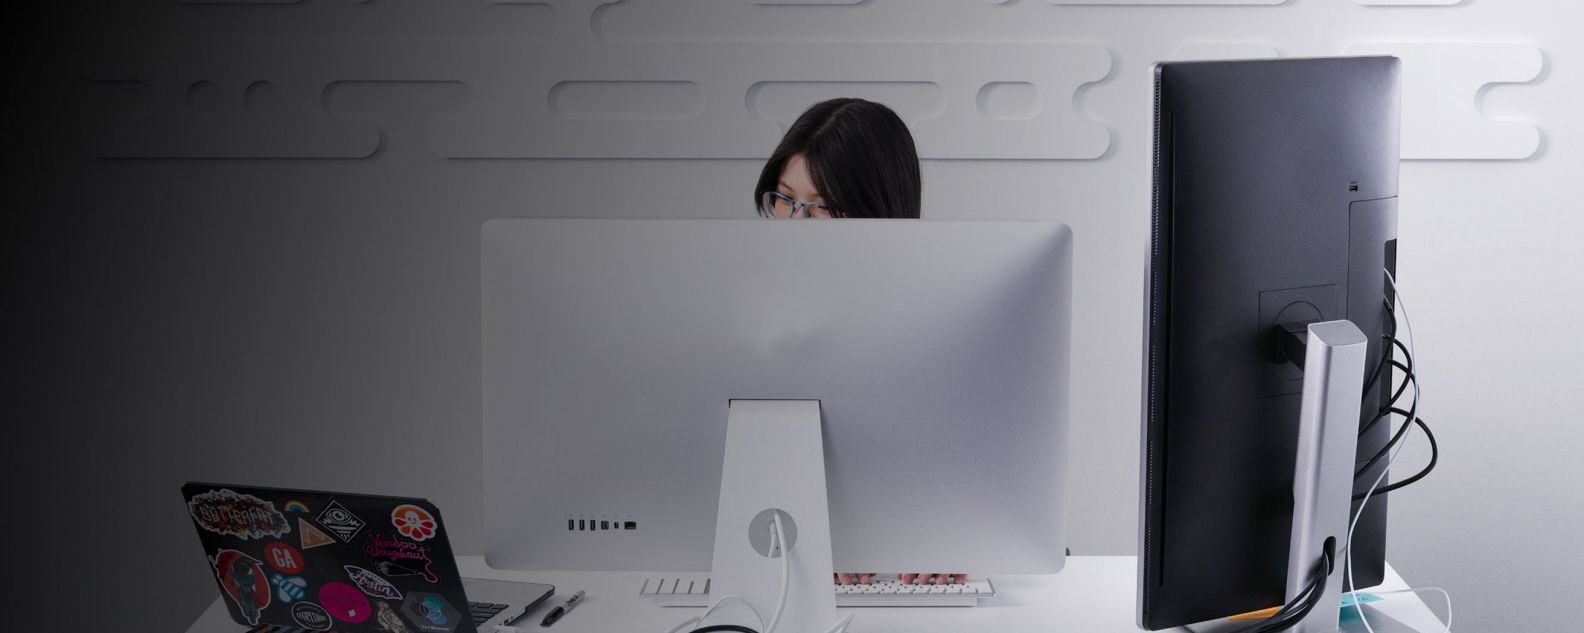 Mujer trabajando concentrada delante de un portátil